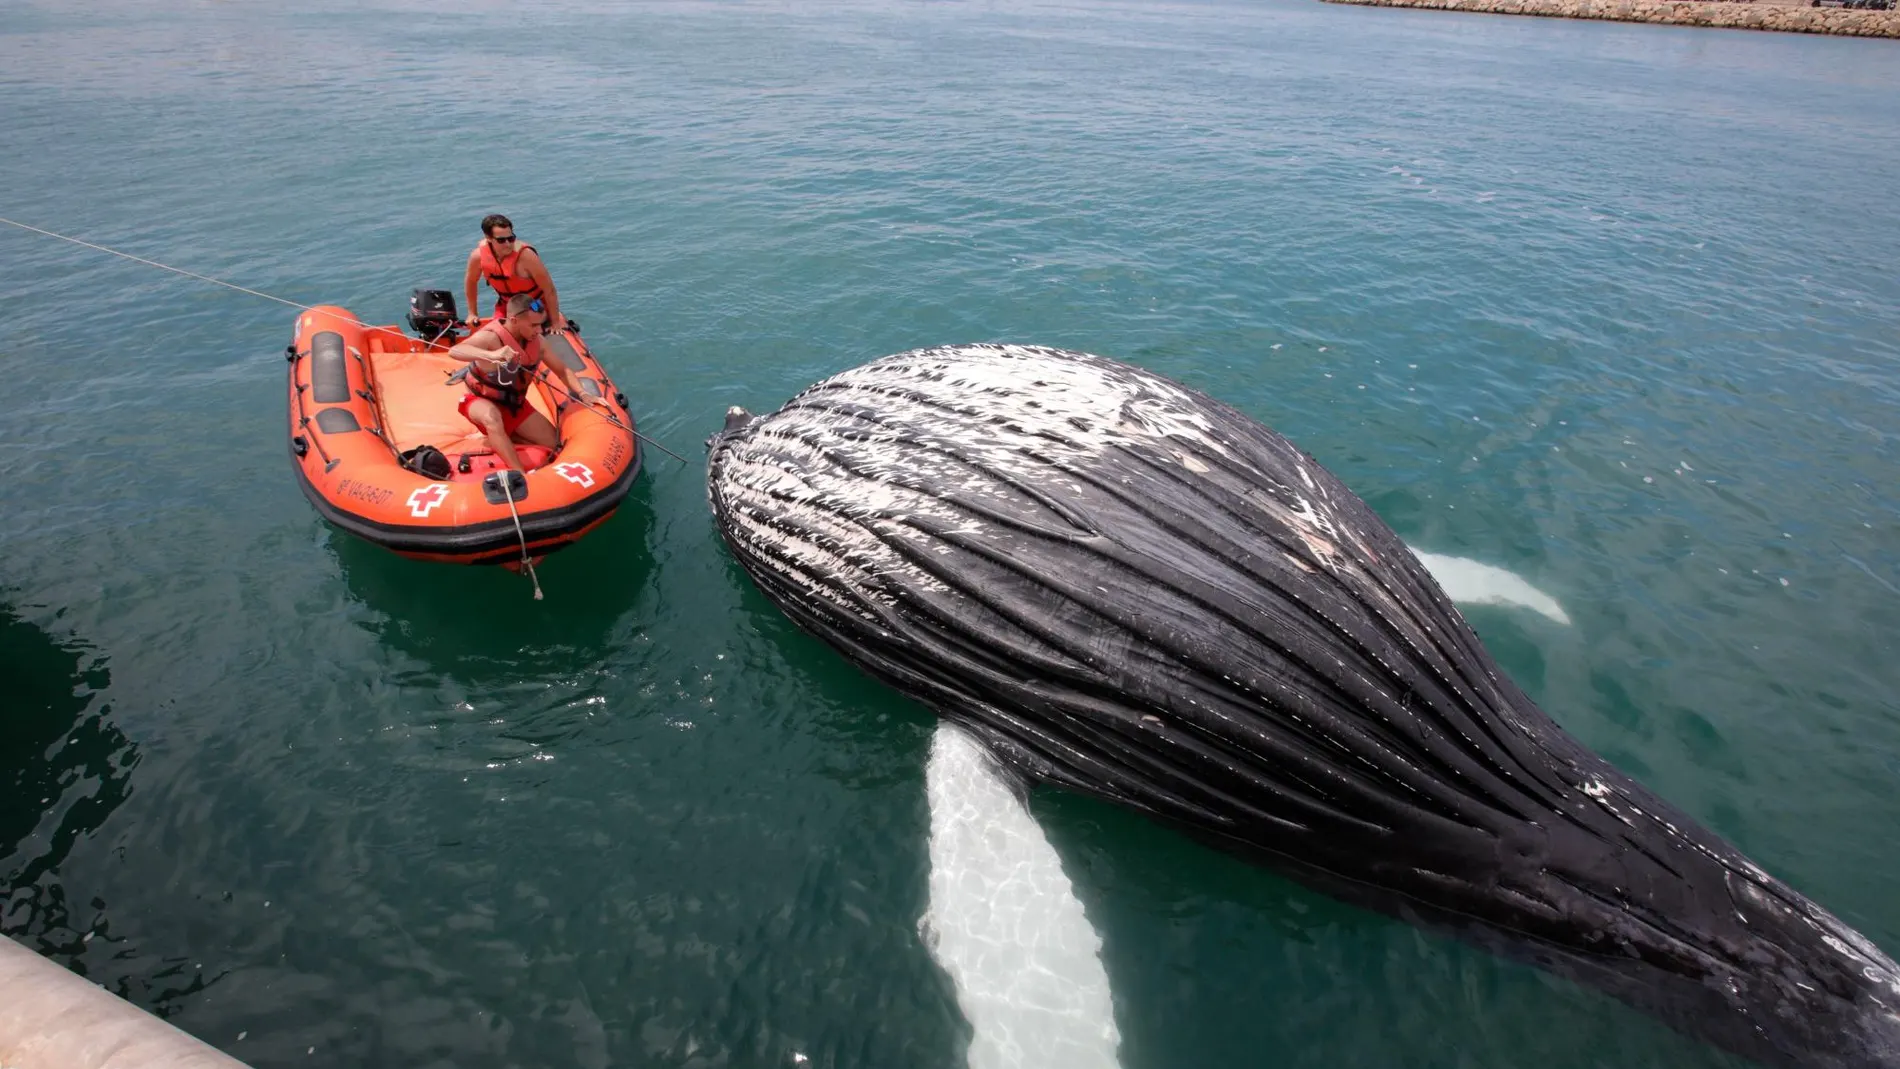 El cadáver de un cetáceo, al parecer una cría de ballena, ha aparecido este sábado varado en la escollera que da acceso al puerto de Gandia